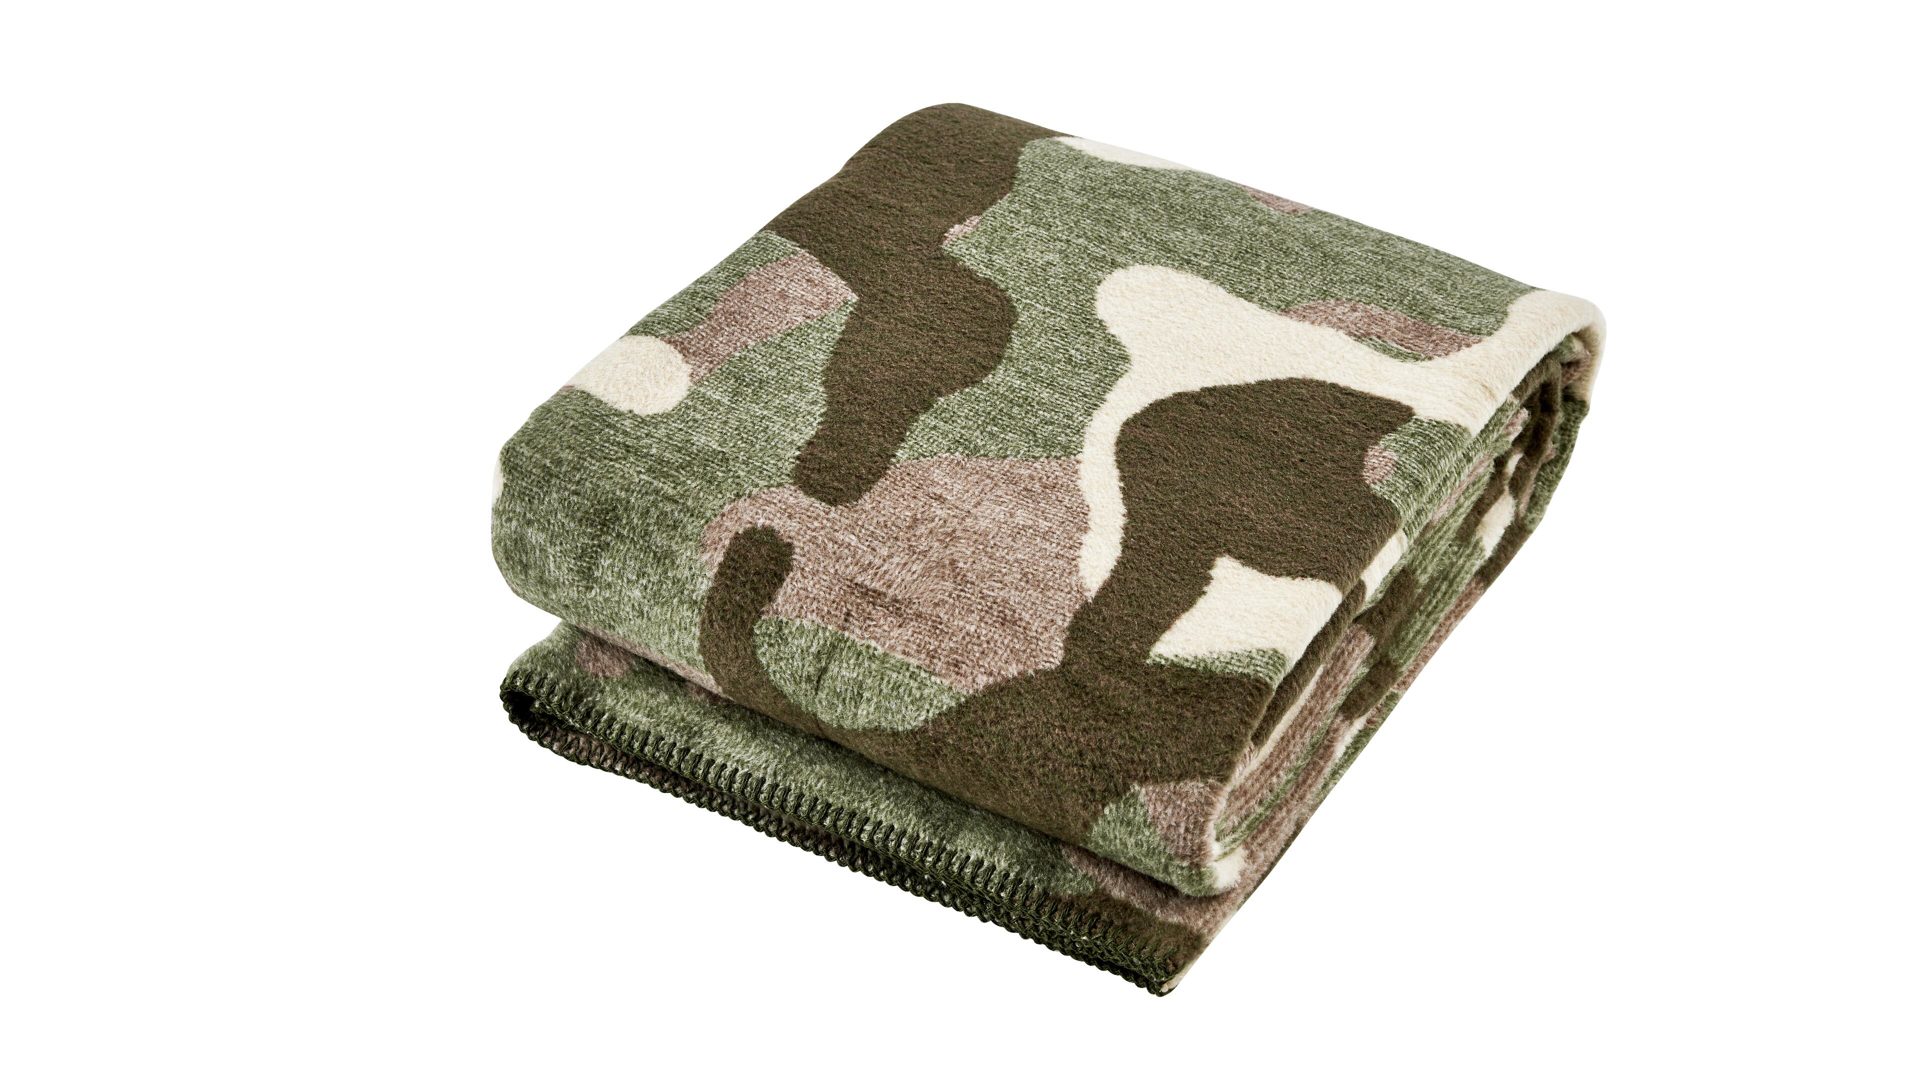 Wohndecke Done by karabel home company aus Stoff in Braun Done Wohndecke Blanket Camouflage braunes Camouflagemuster – ca. 150 x 200 cm